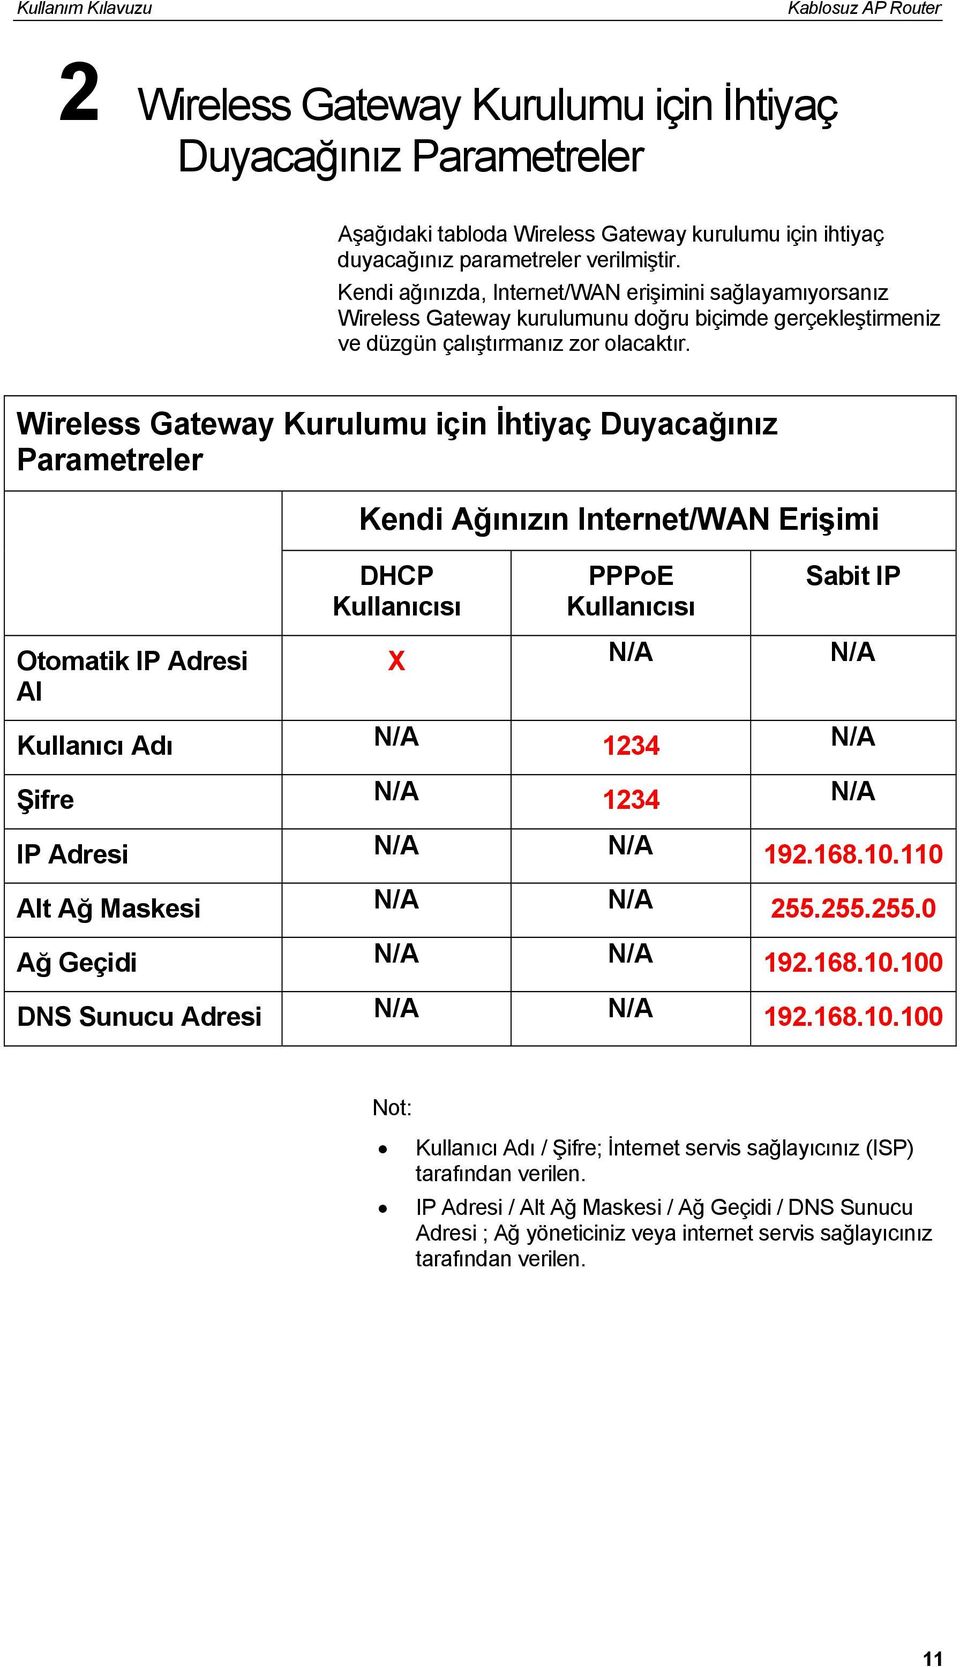 Wireless Gateway Kurulumu için İhtiyaç Duyacağınız Parametreler Otomatik IP Adresi Al Kendi Ağınızın Internet/WAN Erişimi DHCP Kullanıcısı PPPoE Kullanıcısı Sabit IP X N/A N/A Kullanıcı Adı N/A 1234